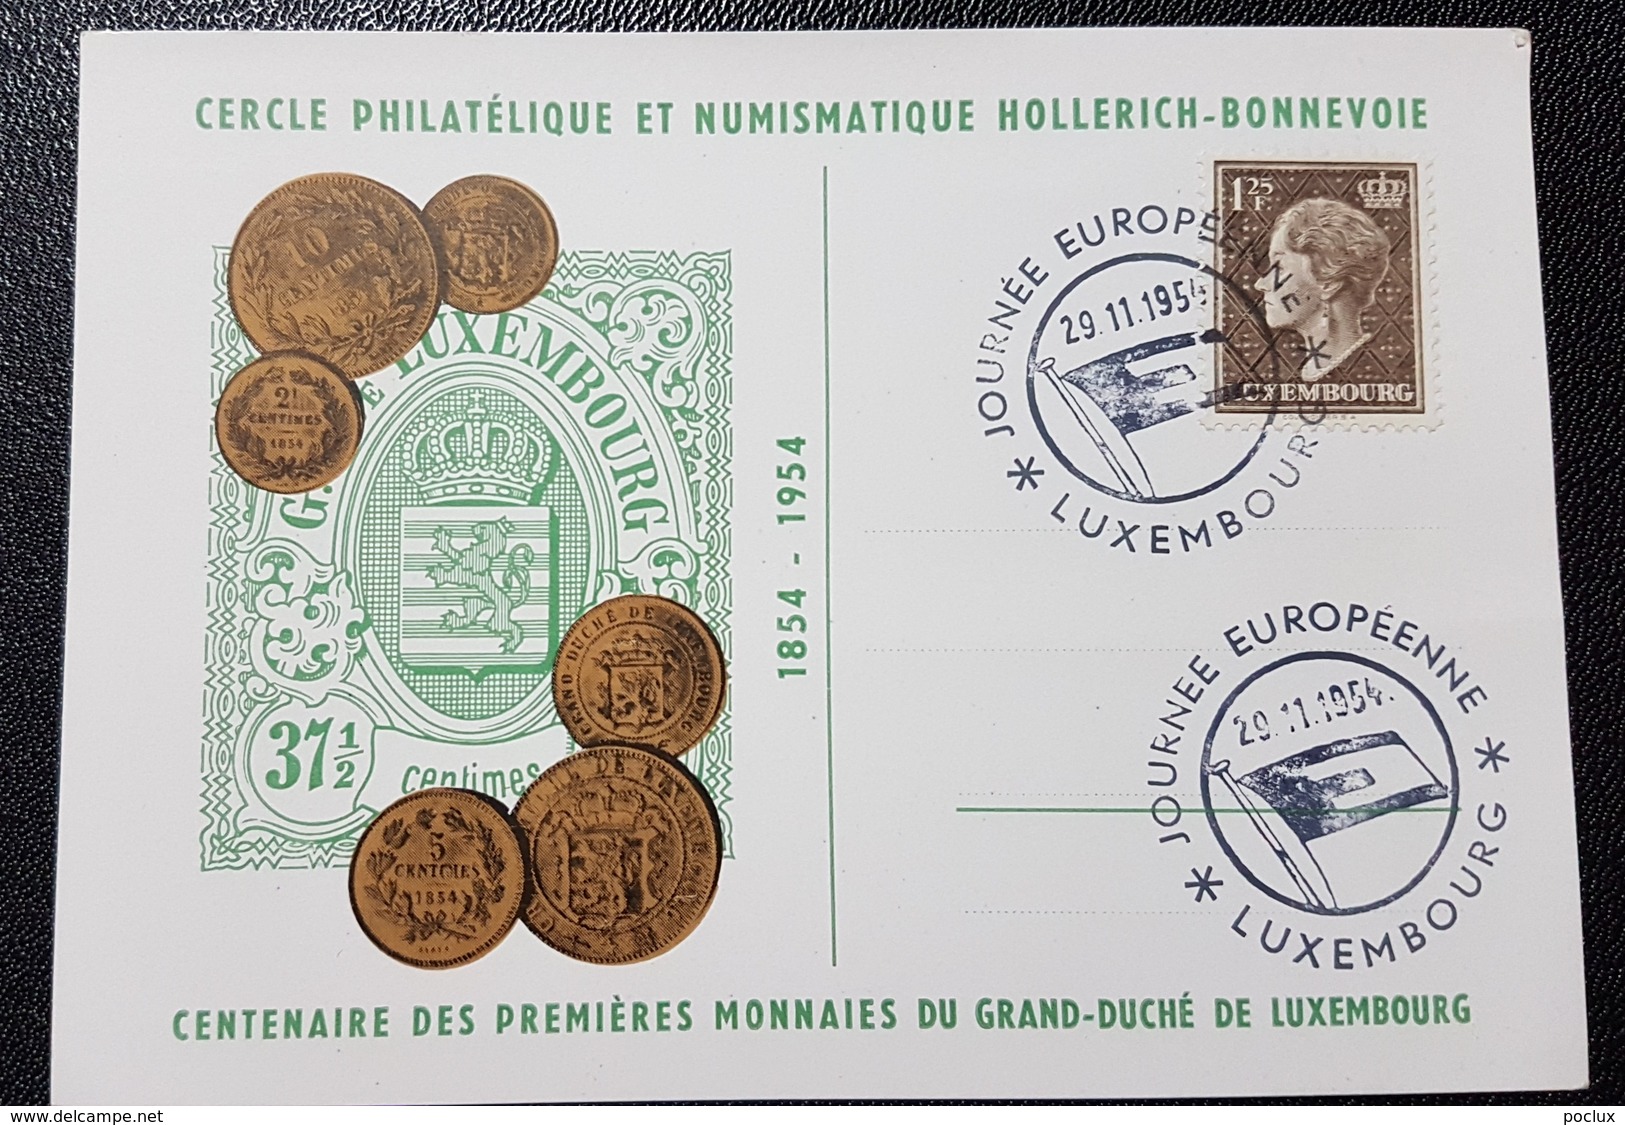 Luxembourg 1954- Journée Européenne Du Timbre 1954- Centenaire De Nos Premières Monnaies Nationales - Cartes Commémoratives